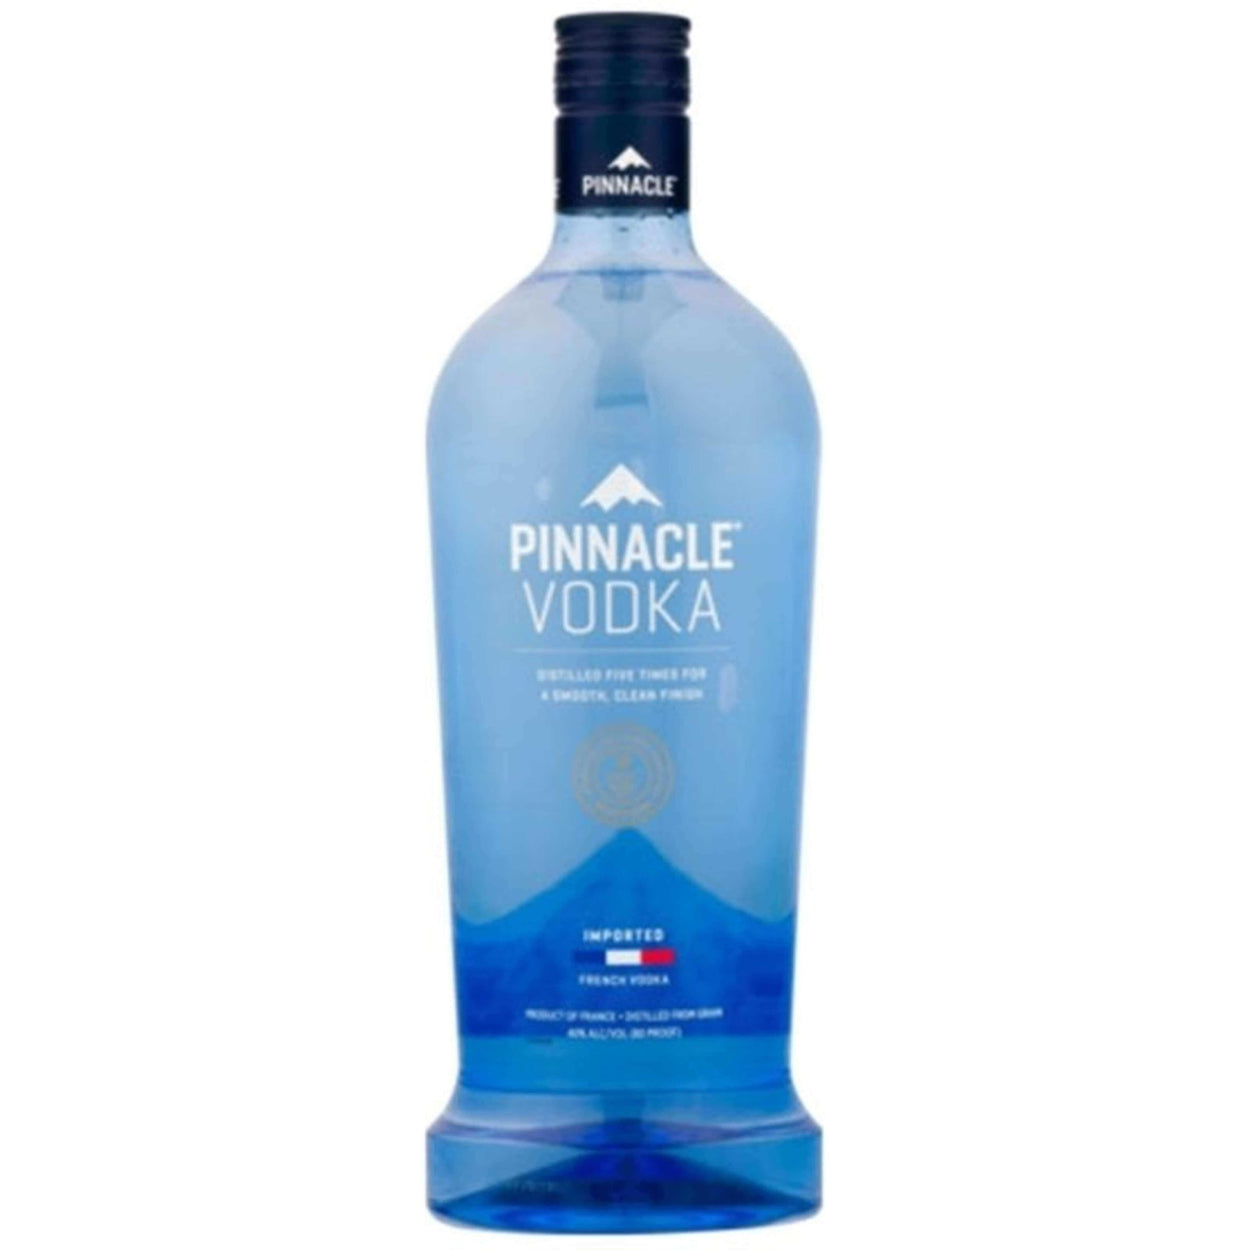 buy-pinnacle-vodka-200ml-online-flaskfinewines